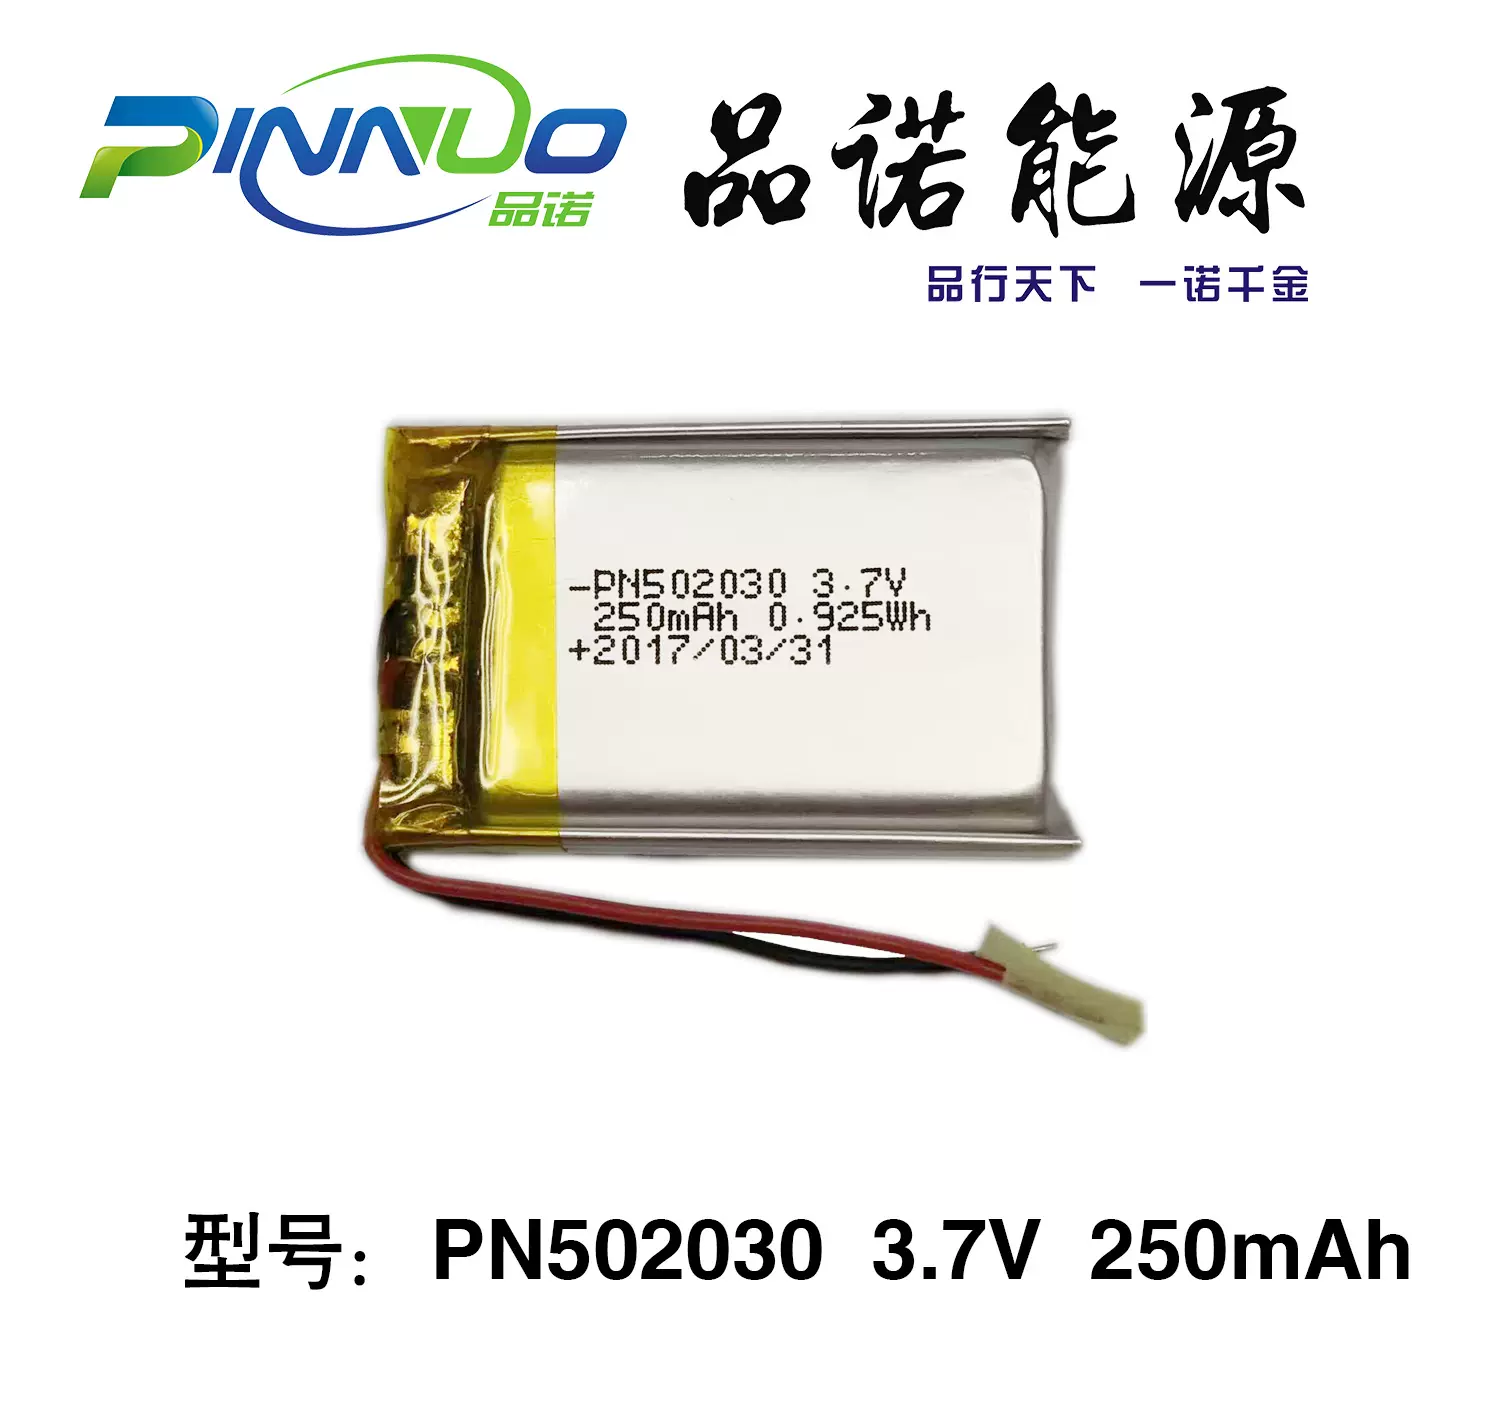 聚合物锂电池PN704050-1600mAh 拥有UL;IEC62133，UN38.3;CE等